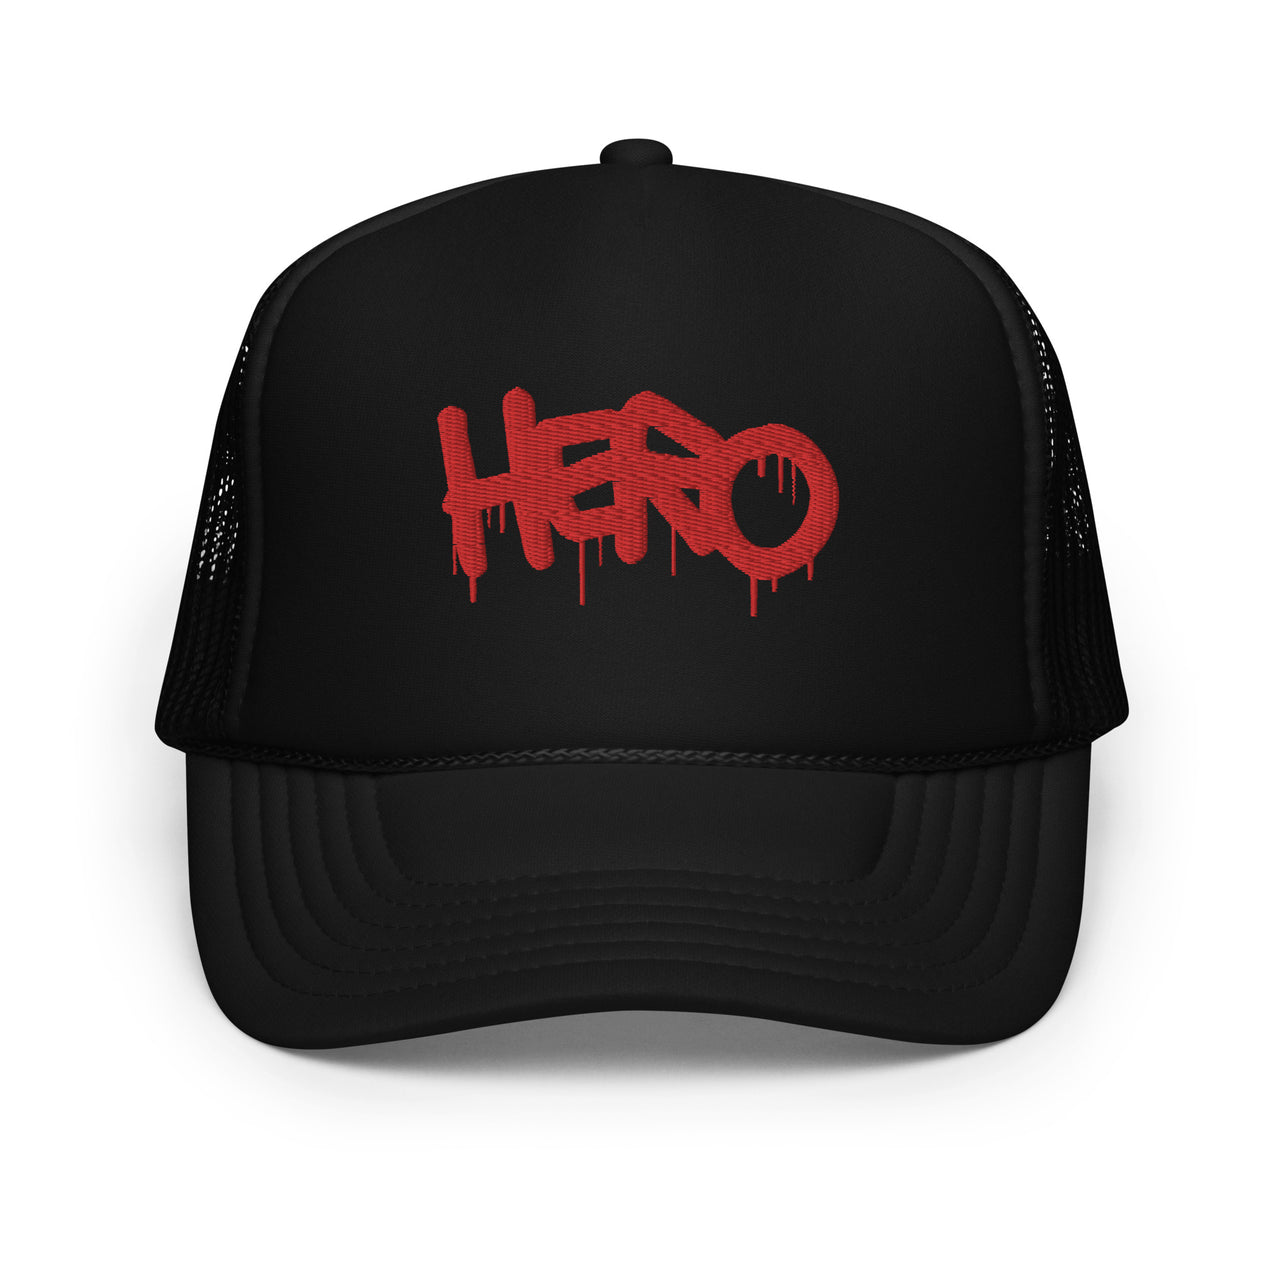 HERO - Foam trucker hat - Design Hero